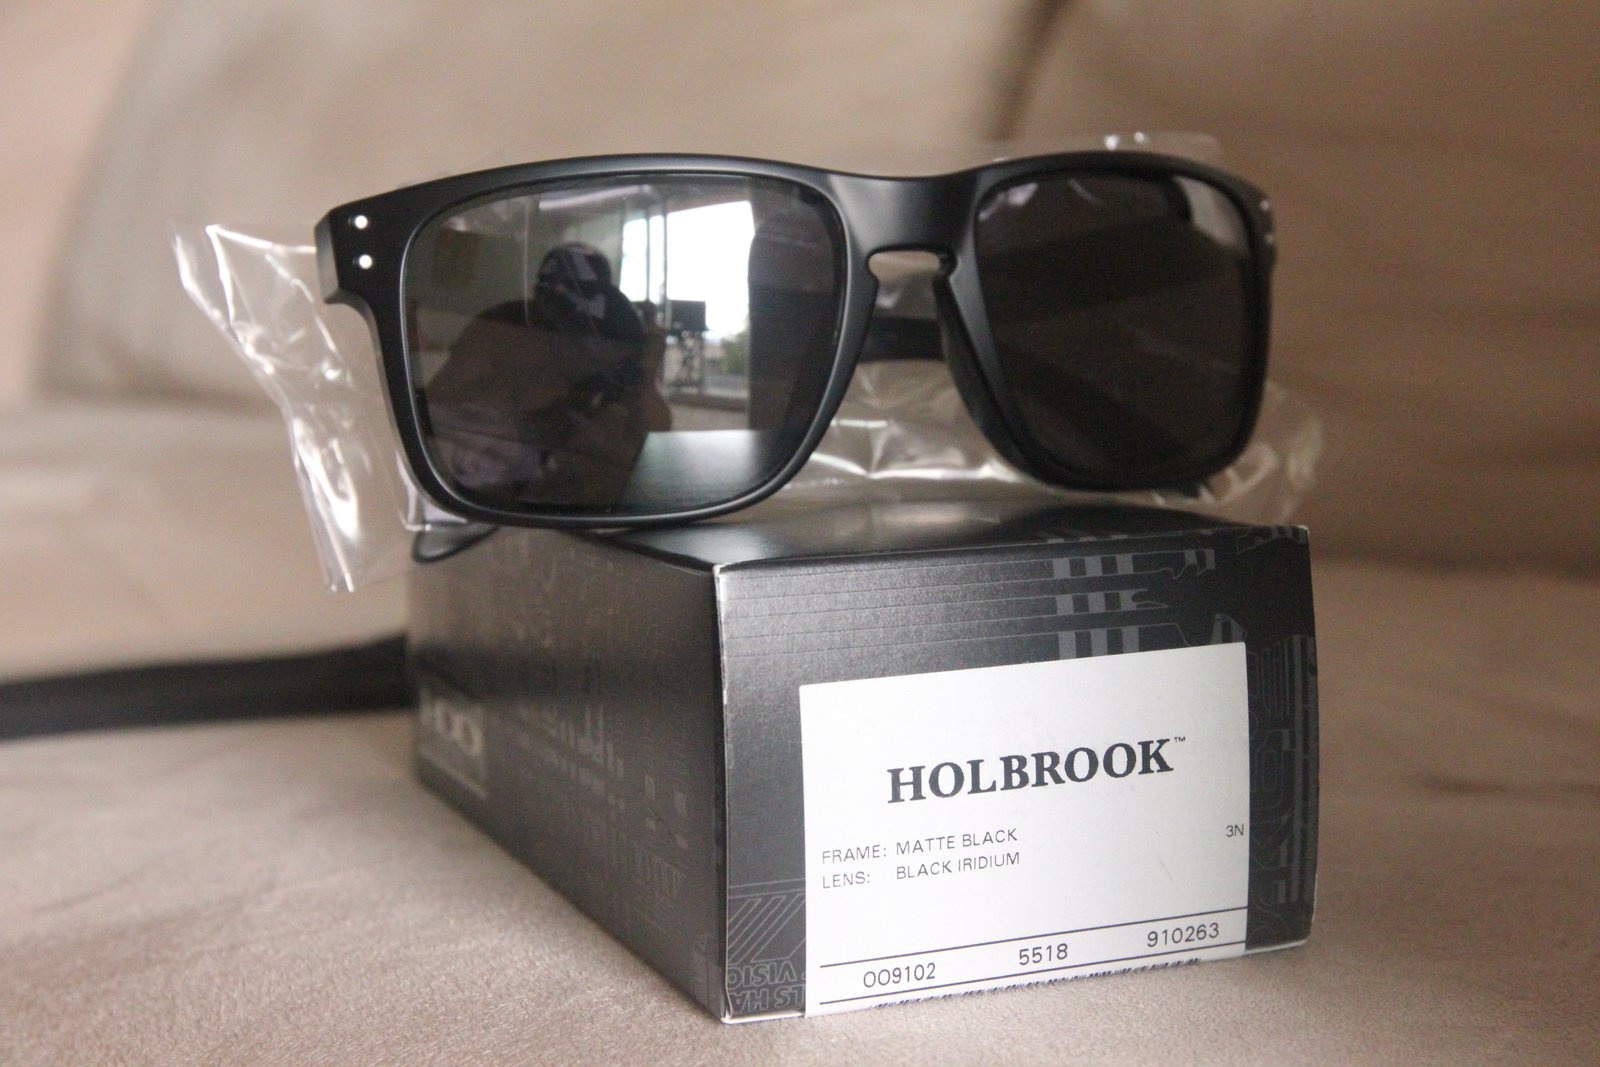 Holbrook glasses